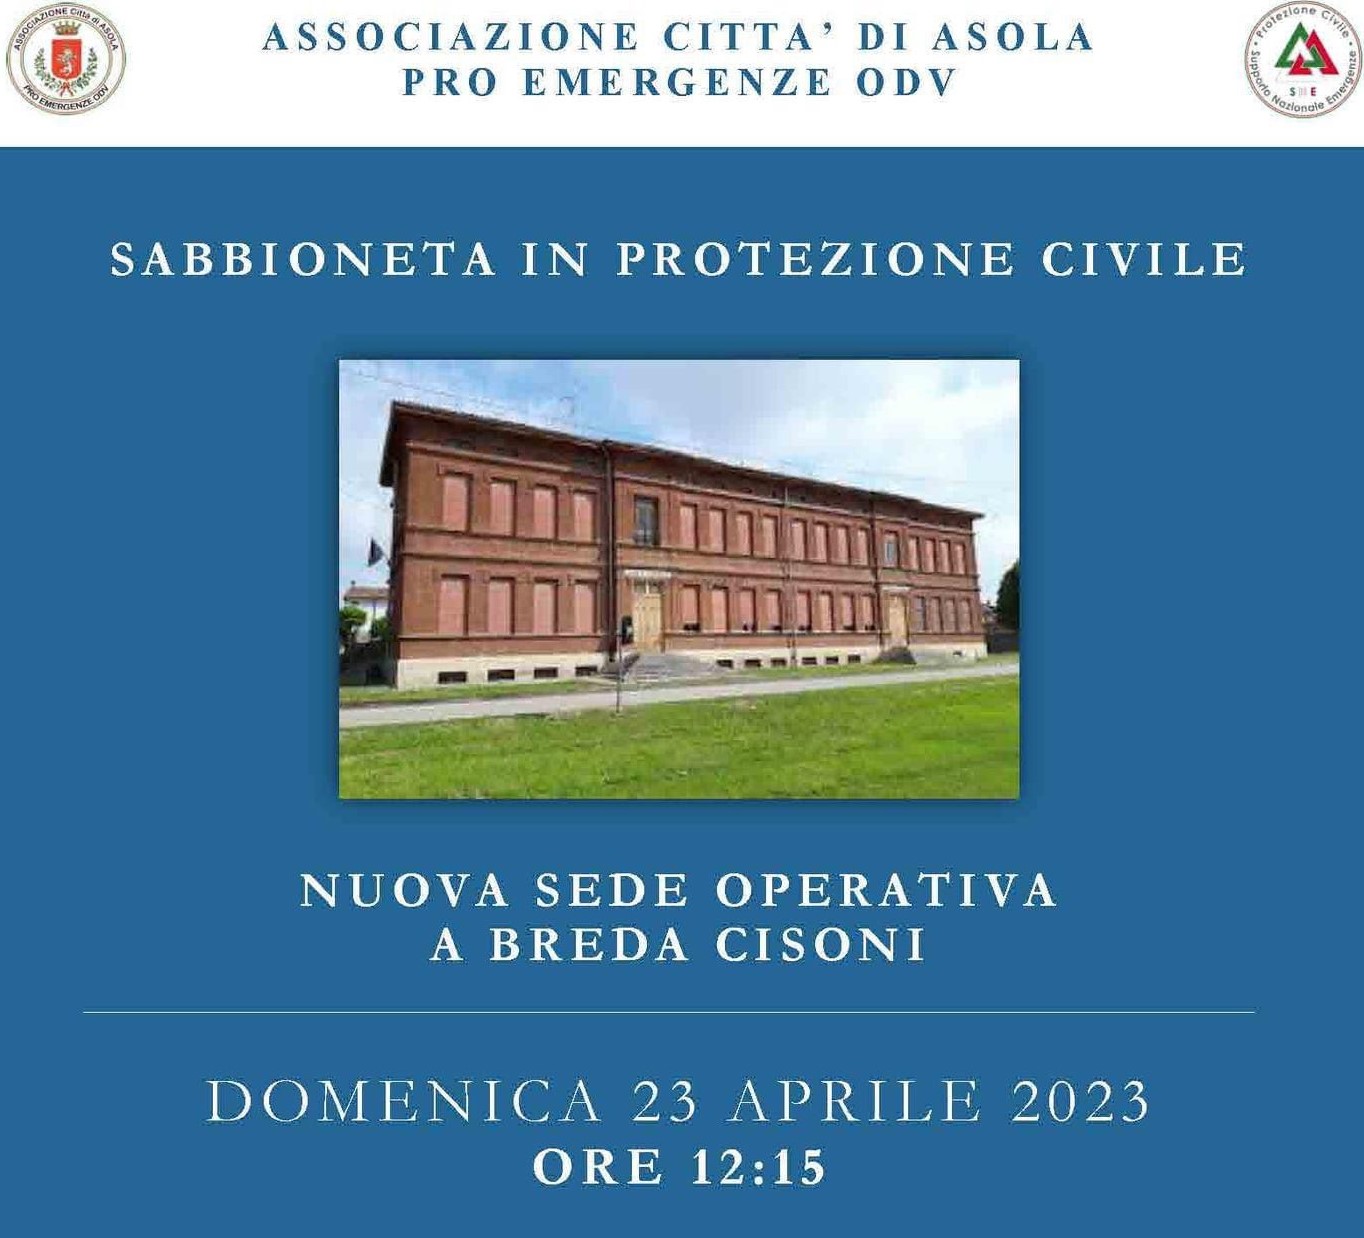 Inaugurazione sede protezione civile in breda cisoni - associazione citta' di asola pro emergenze odv